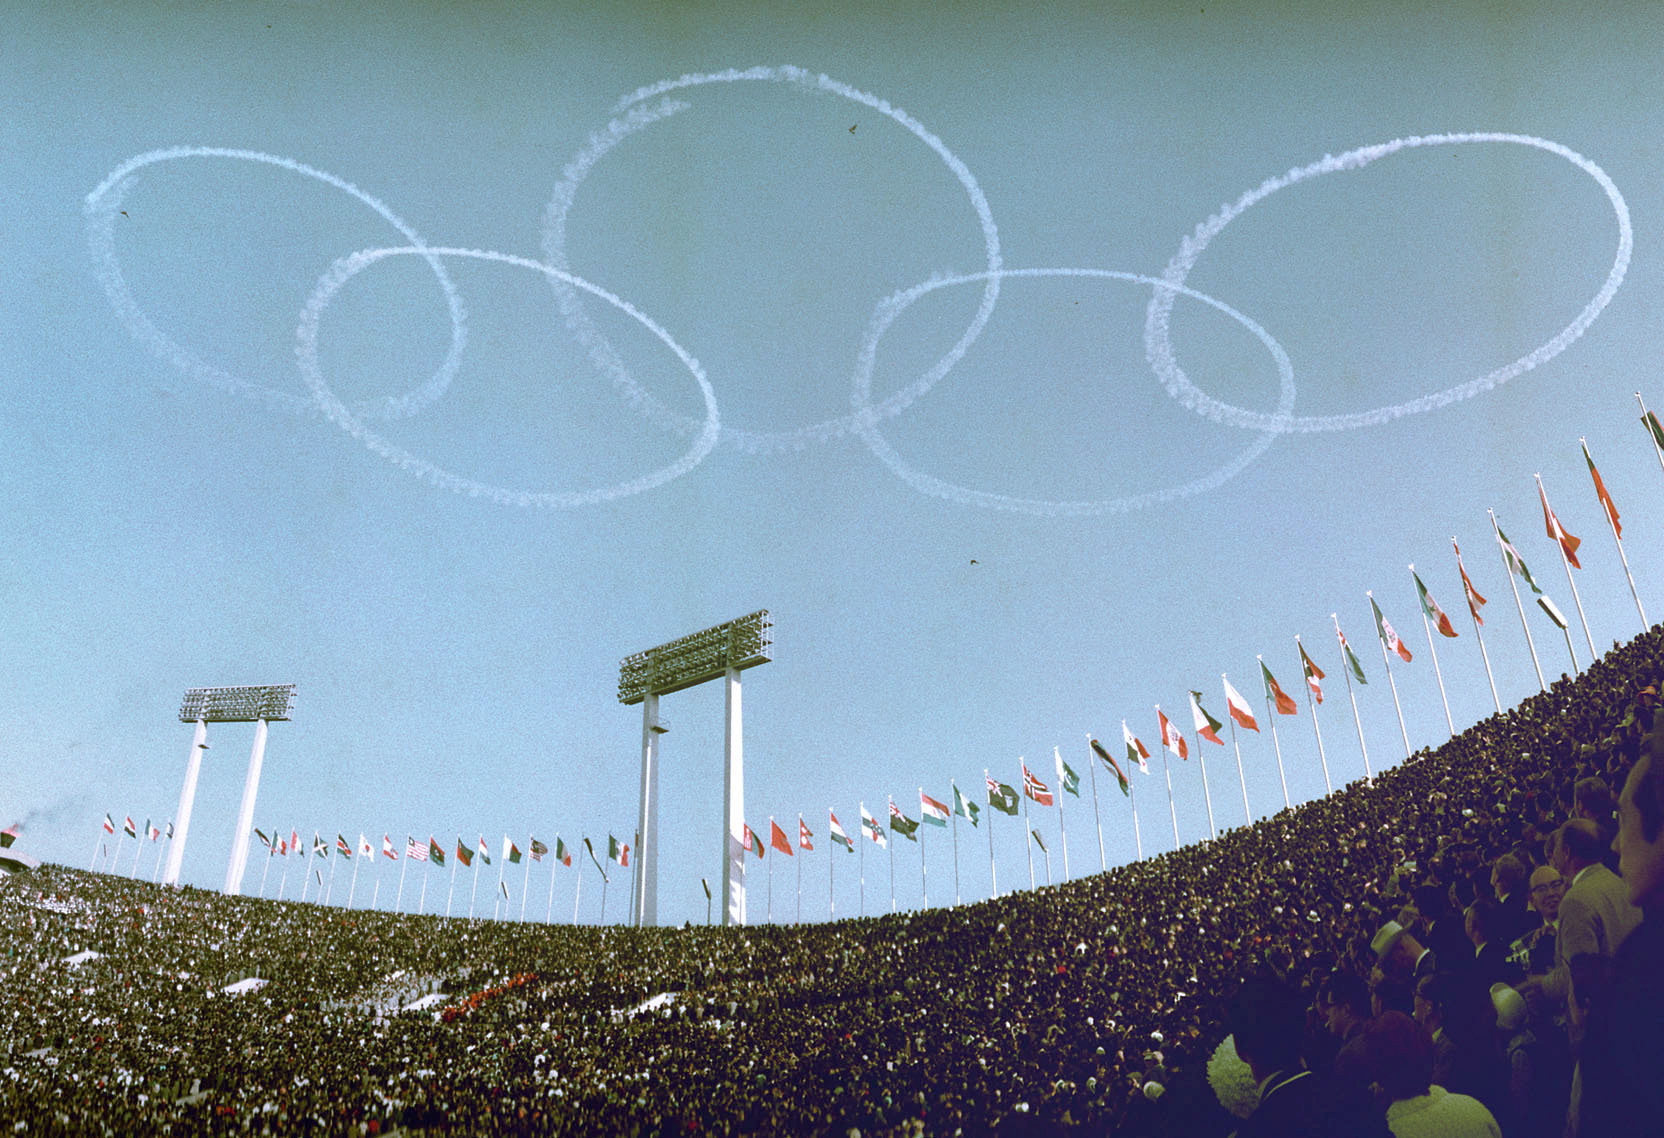 日本航空自卫队的蓝色冲击波（Blue Impulse）飞行表演队，1964年在东京奥运开幕式上，5架F-86在东京国立竞技场上空画出奥林匹克标志圆圈，打响国际知名度。路透